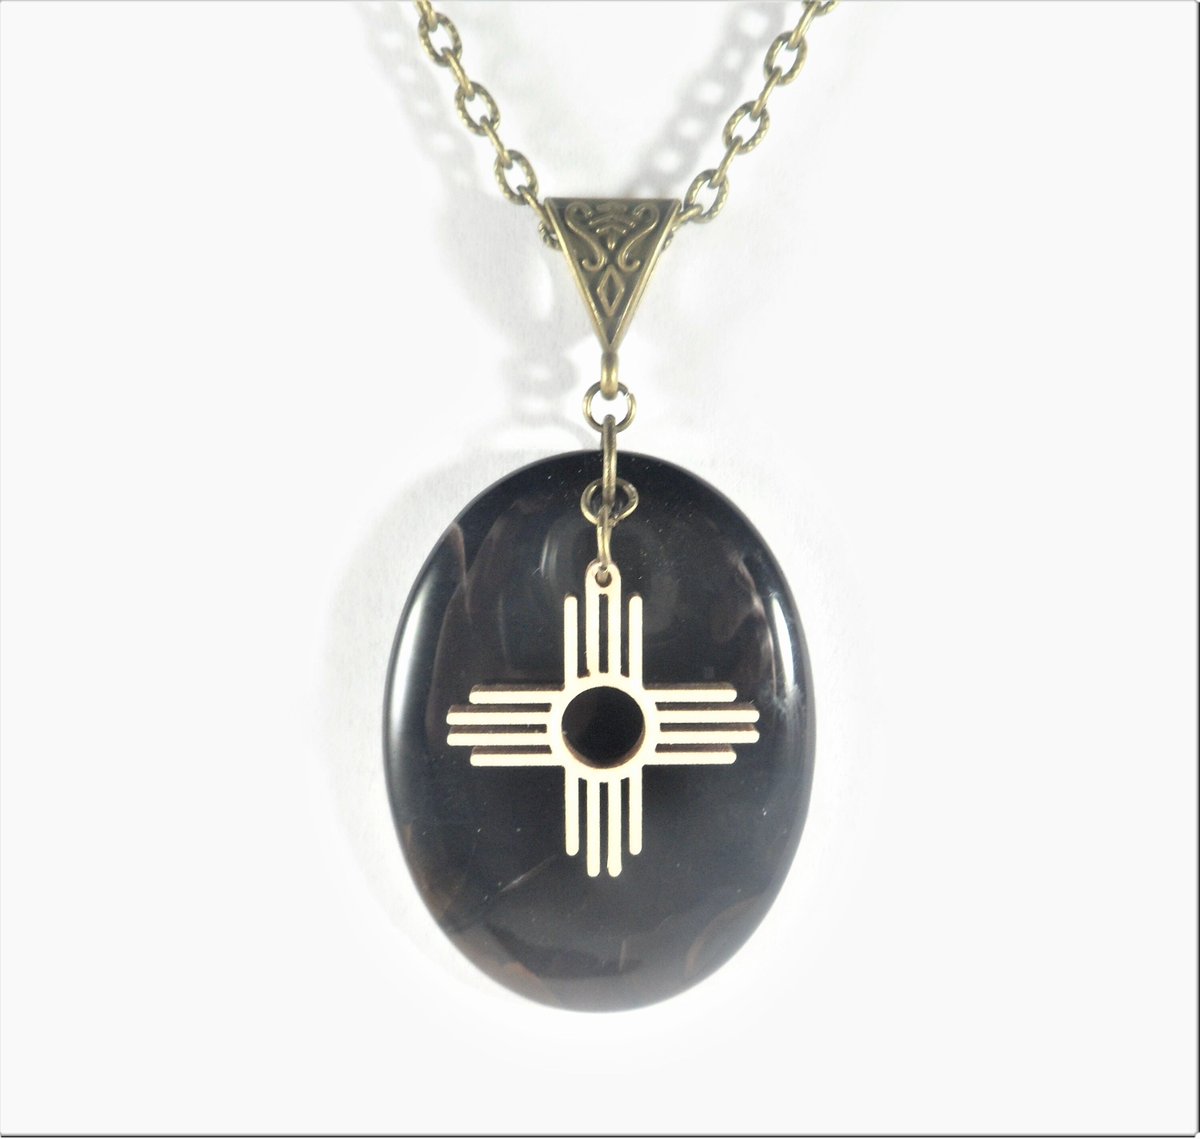 Zia Pendant, Bronze Zia Necklace, Unisex Santa Fe New Mexico Zia Symbol Jewelry, Unique Wood Zia Charm Pendant, Dark Brown Agate Zia Jewelry tuppu.net/f34f12e2 #EtsySeller #NewMexico #SantaFe #EtsyShop #UniqueZiaPendant